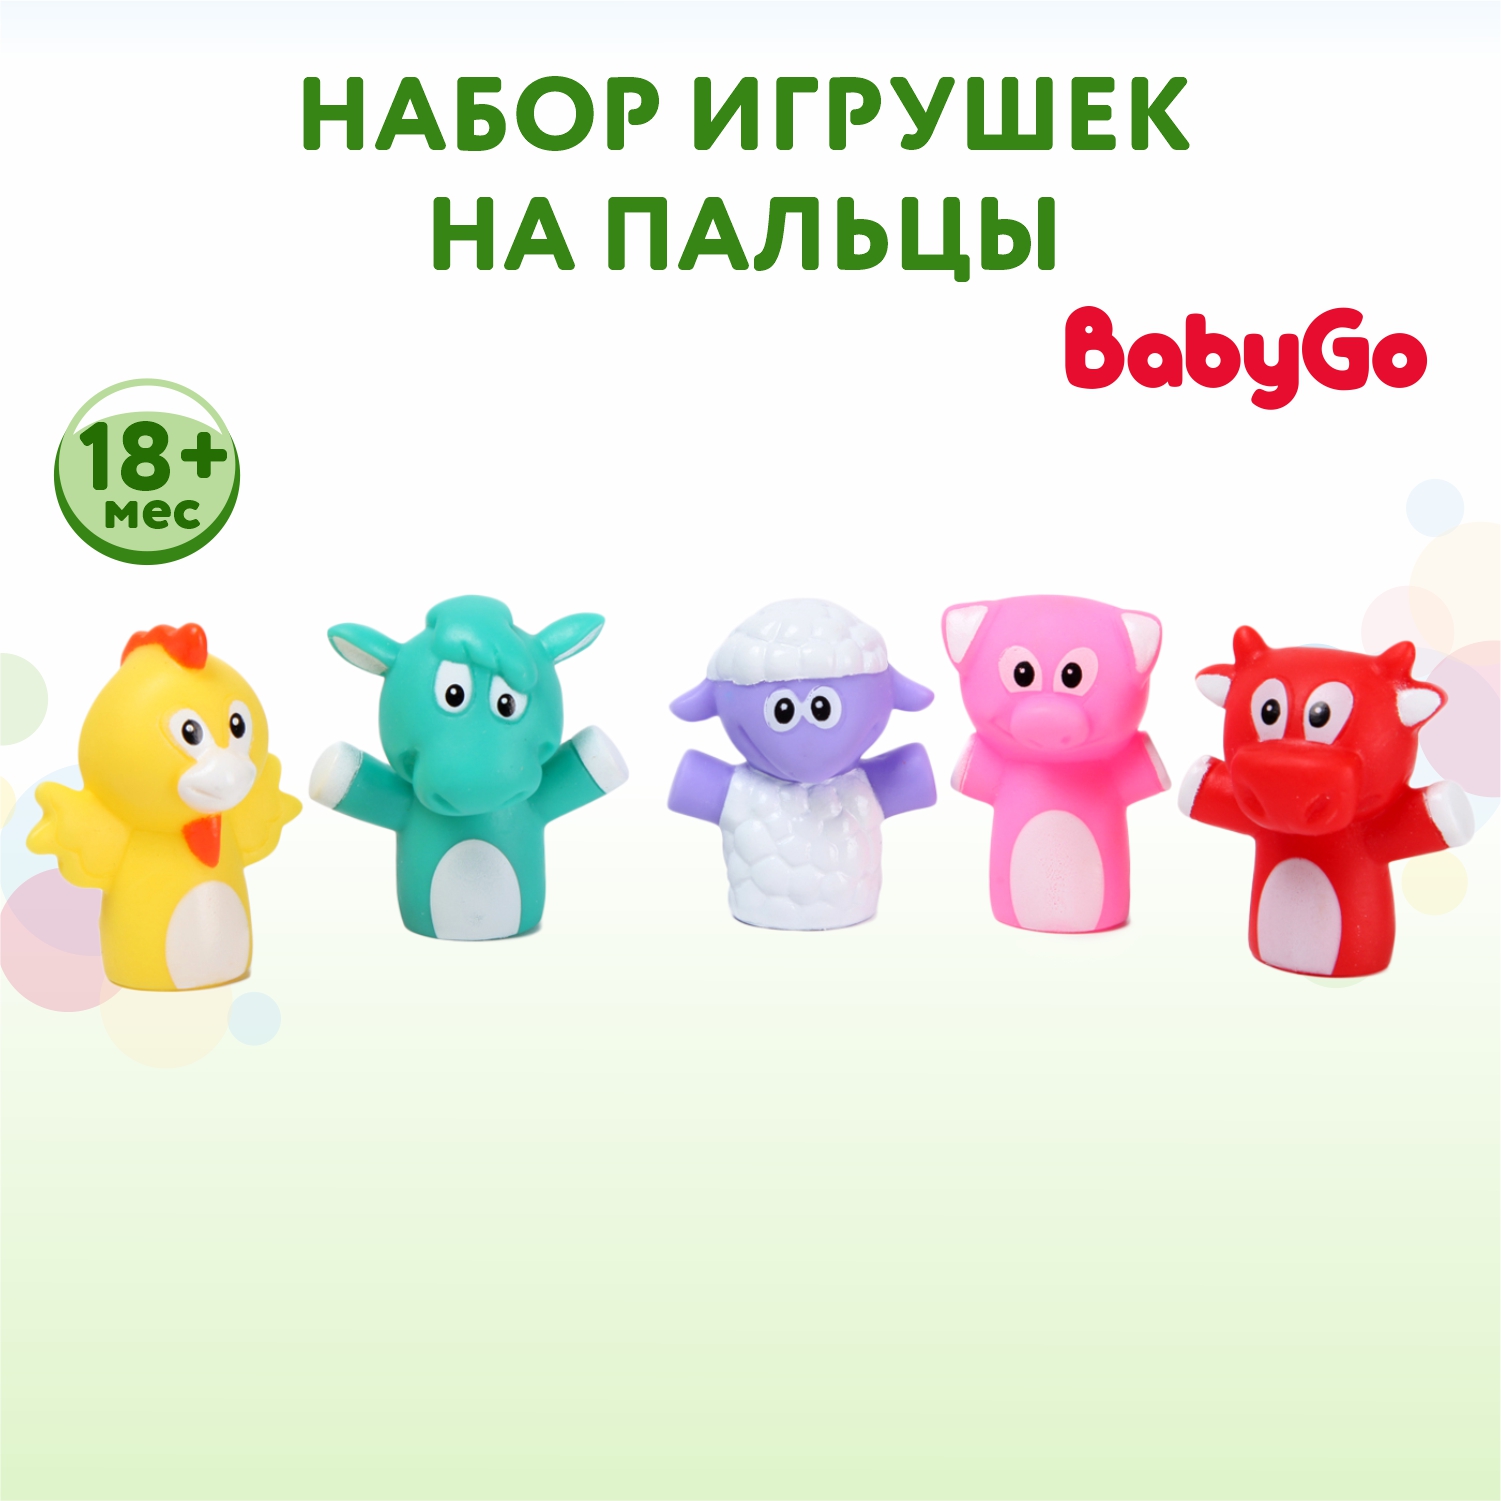 Набор игрушек на пальцы BabyGo 5 шт. TL-20 - фото 1